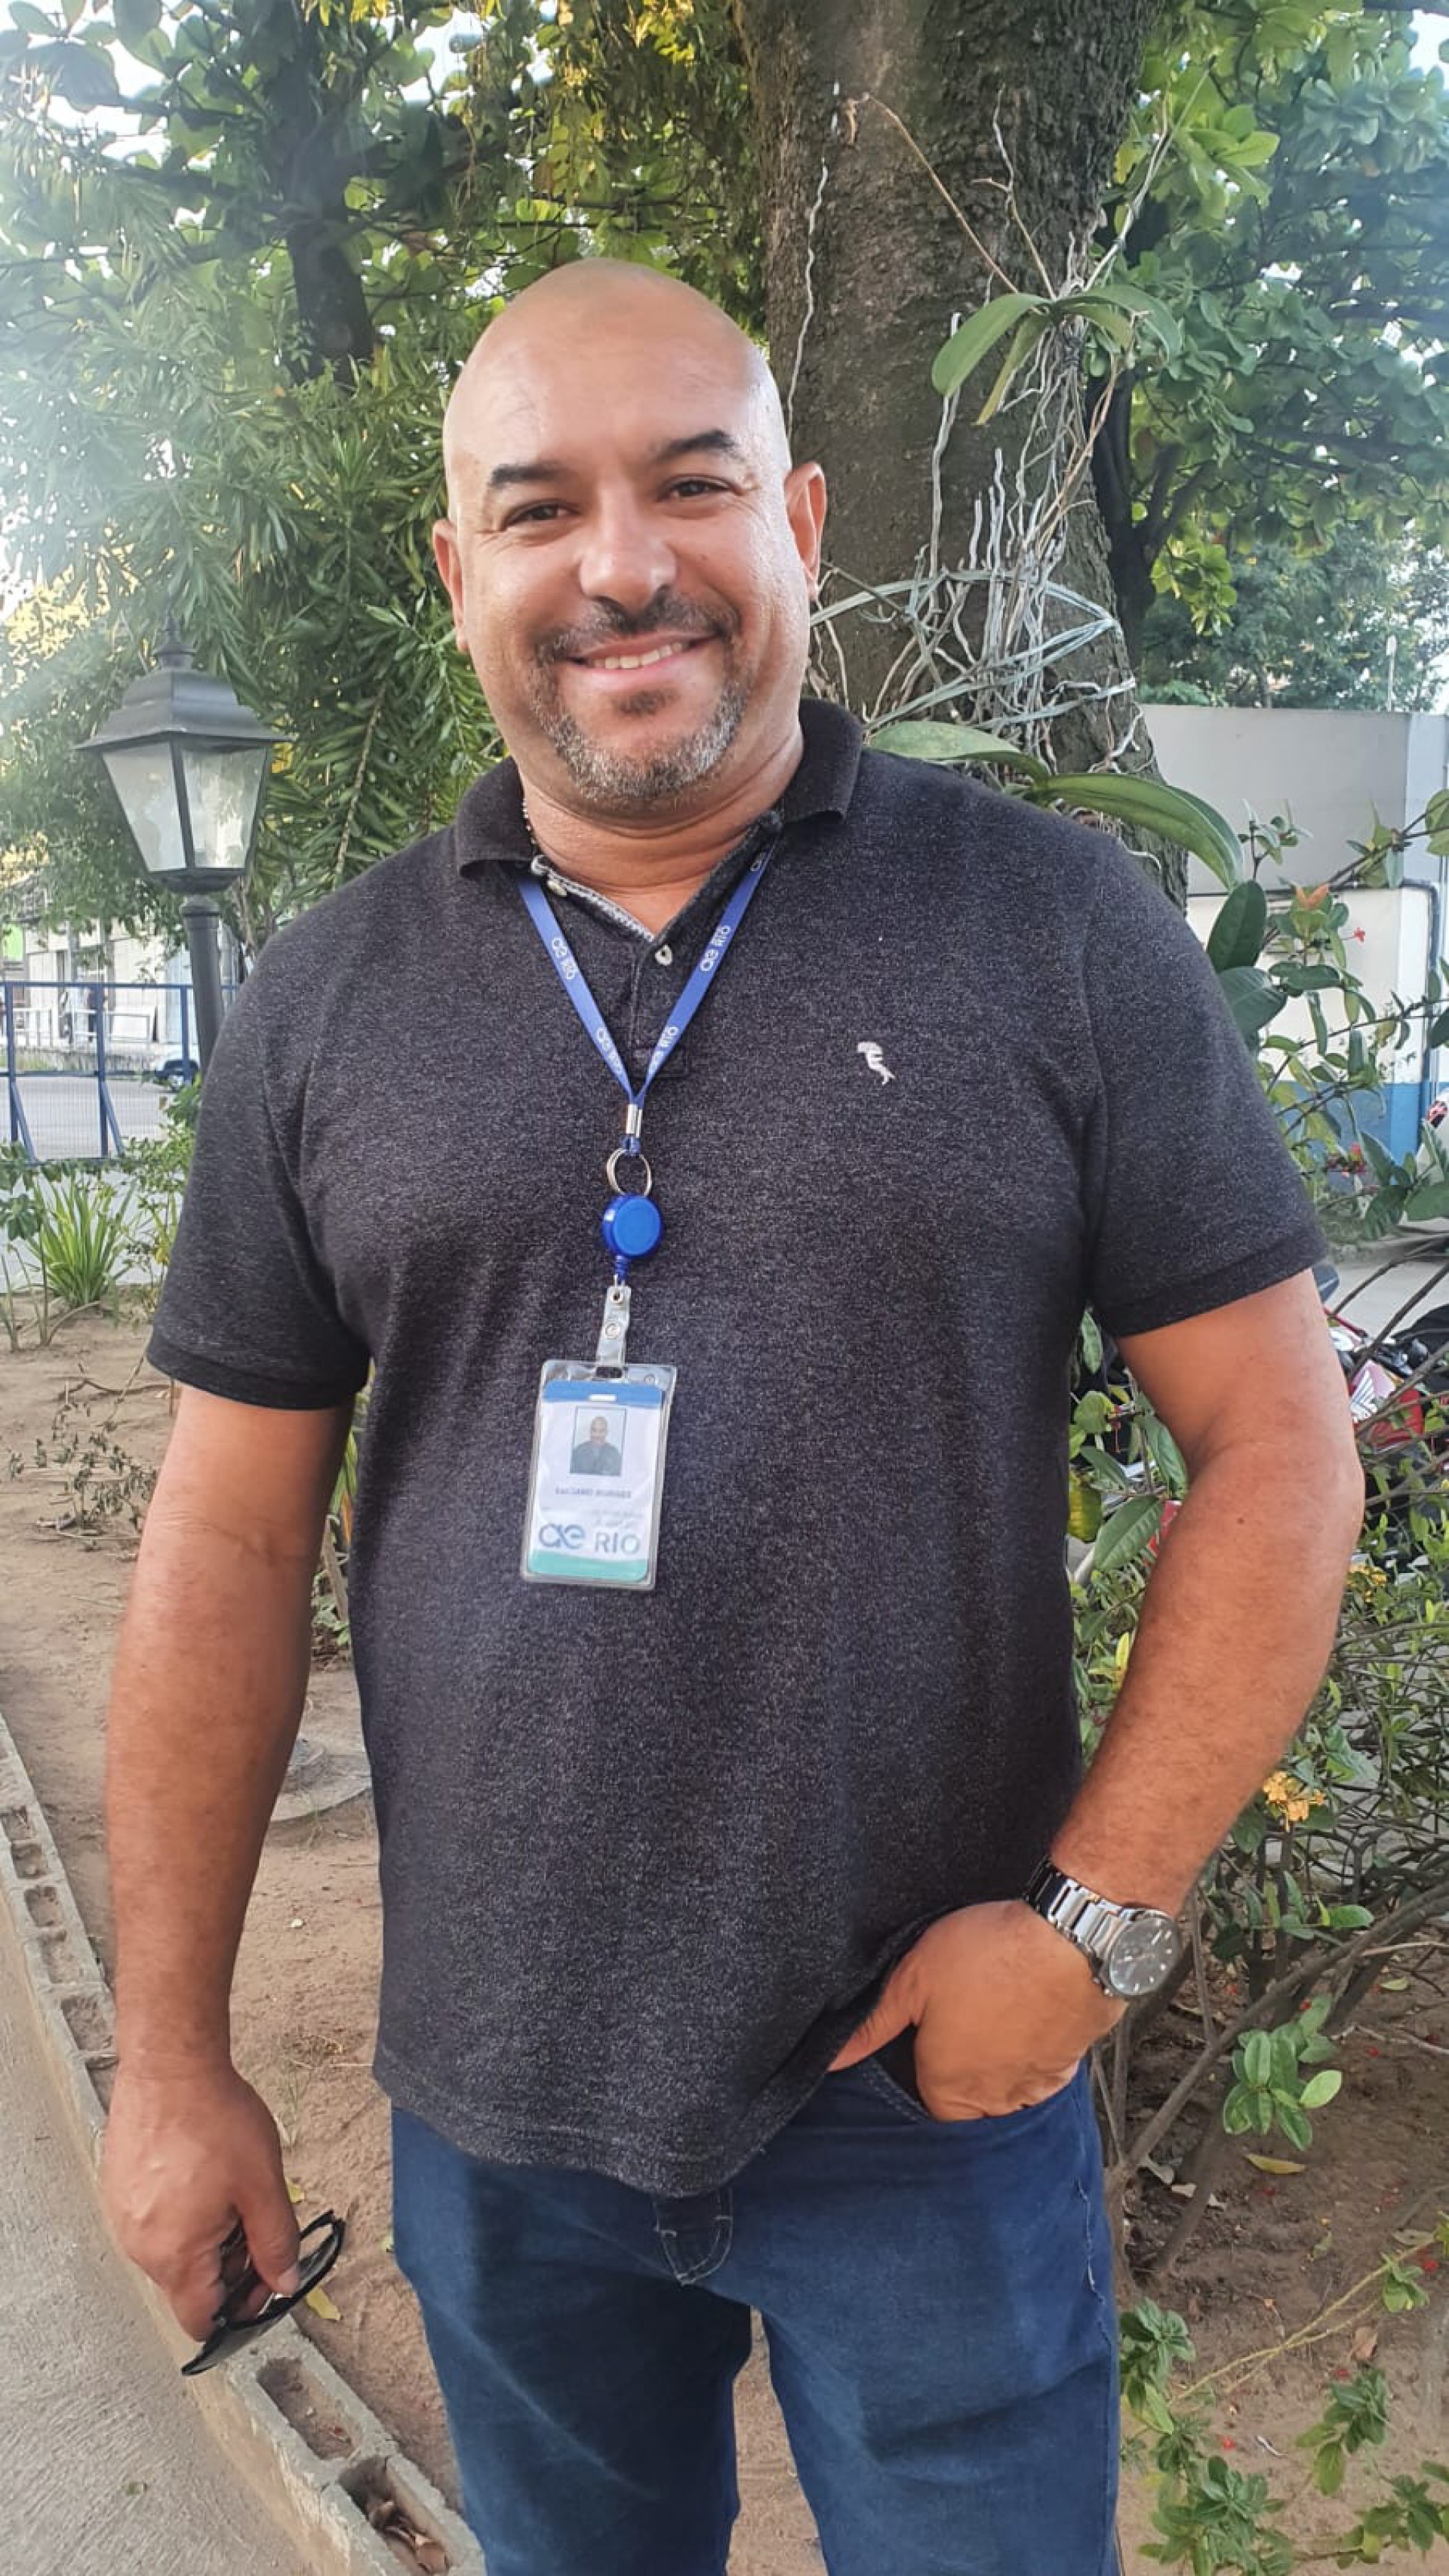 Colaborador Luciano Baltazar, supervisor de serviços de água participou do treinamento - Divulgação